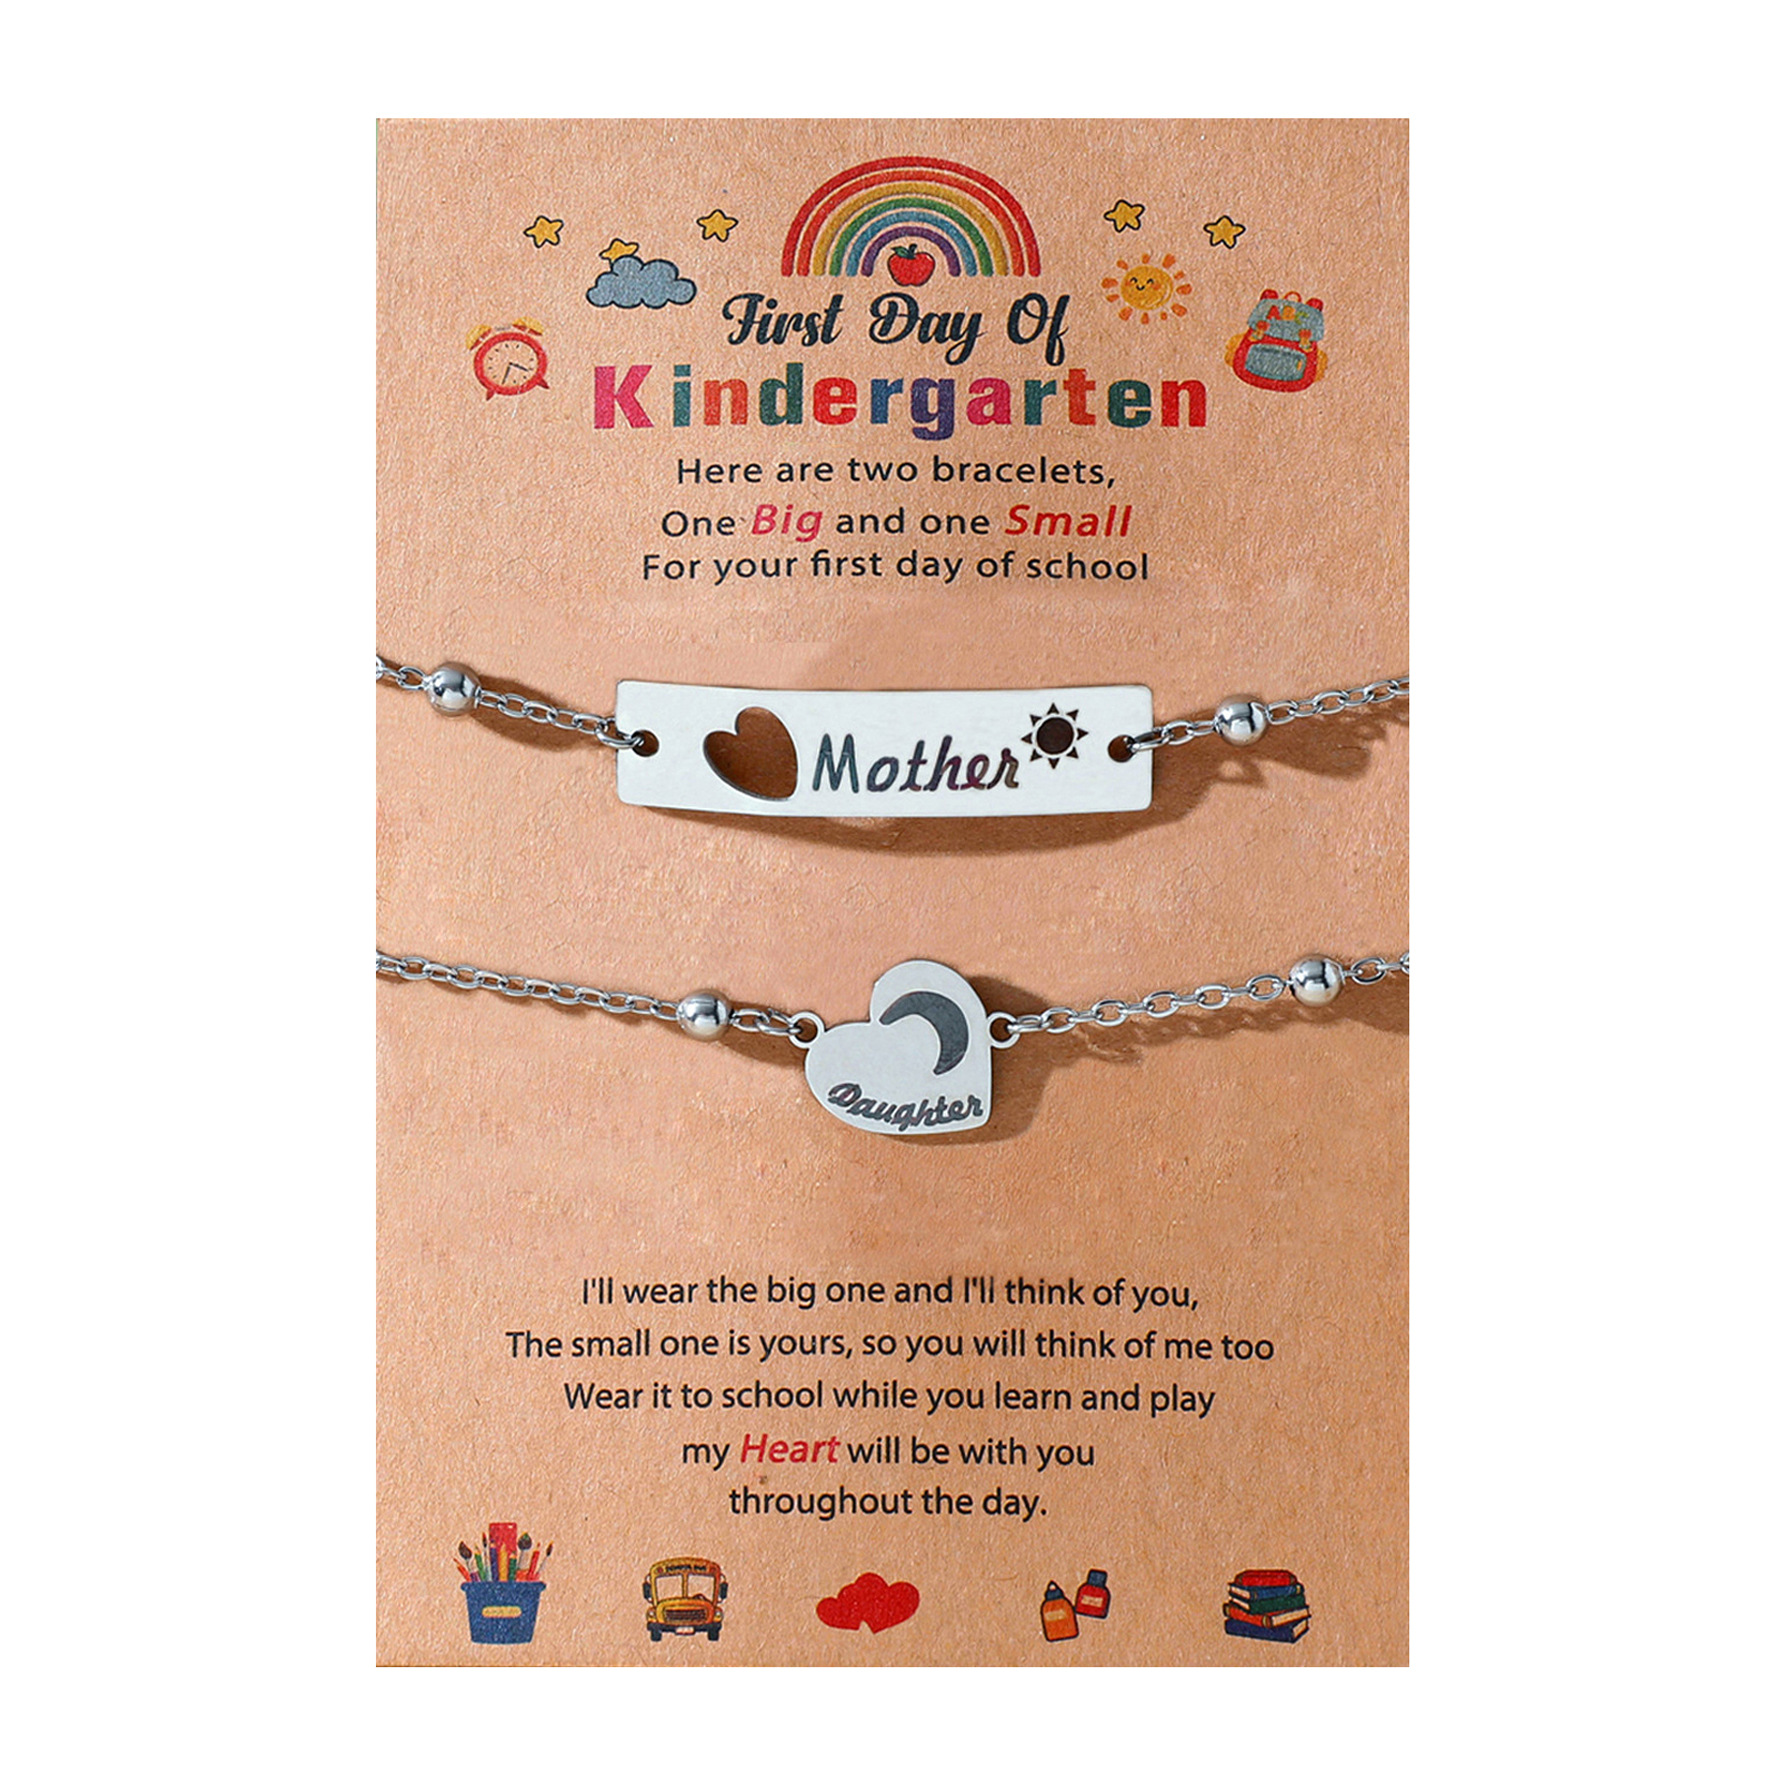 6:Kindergarten chain model